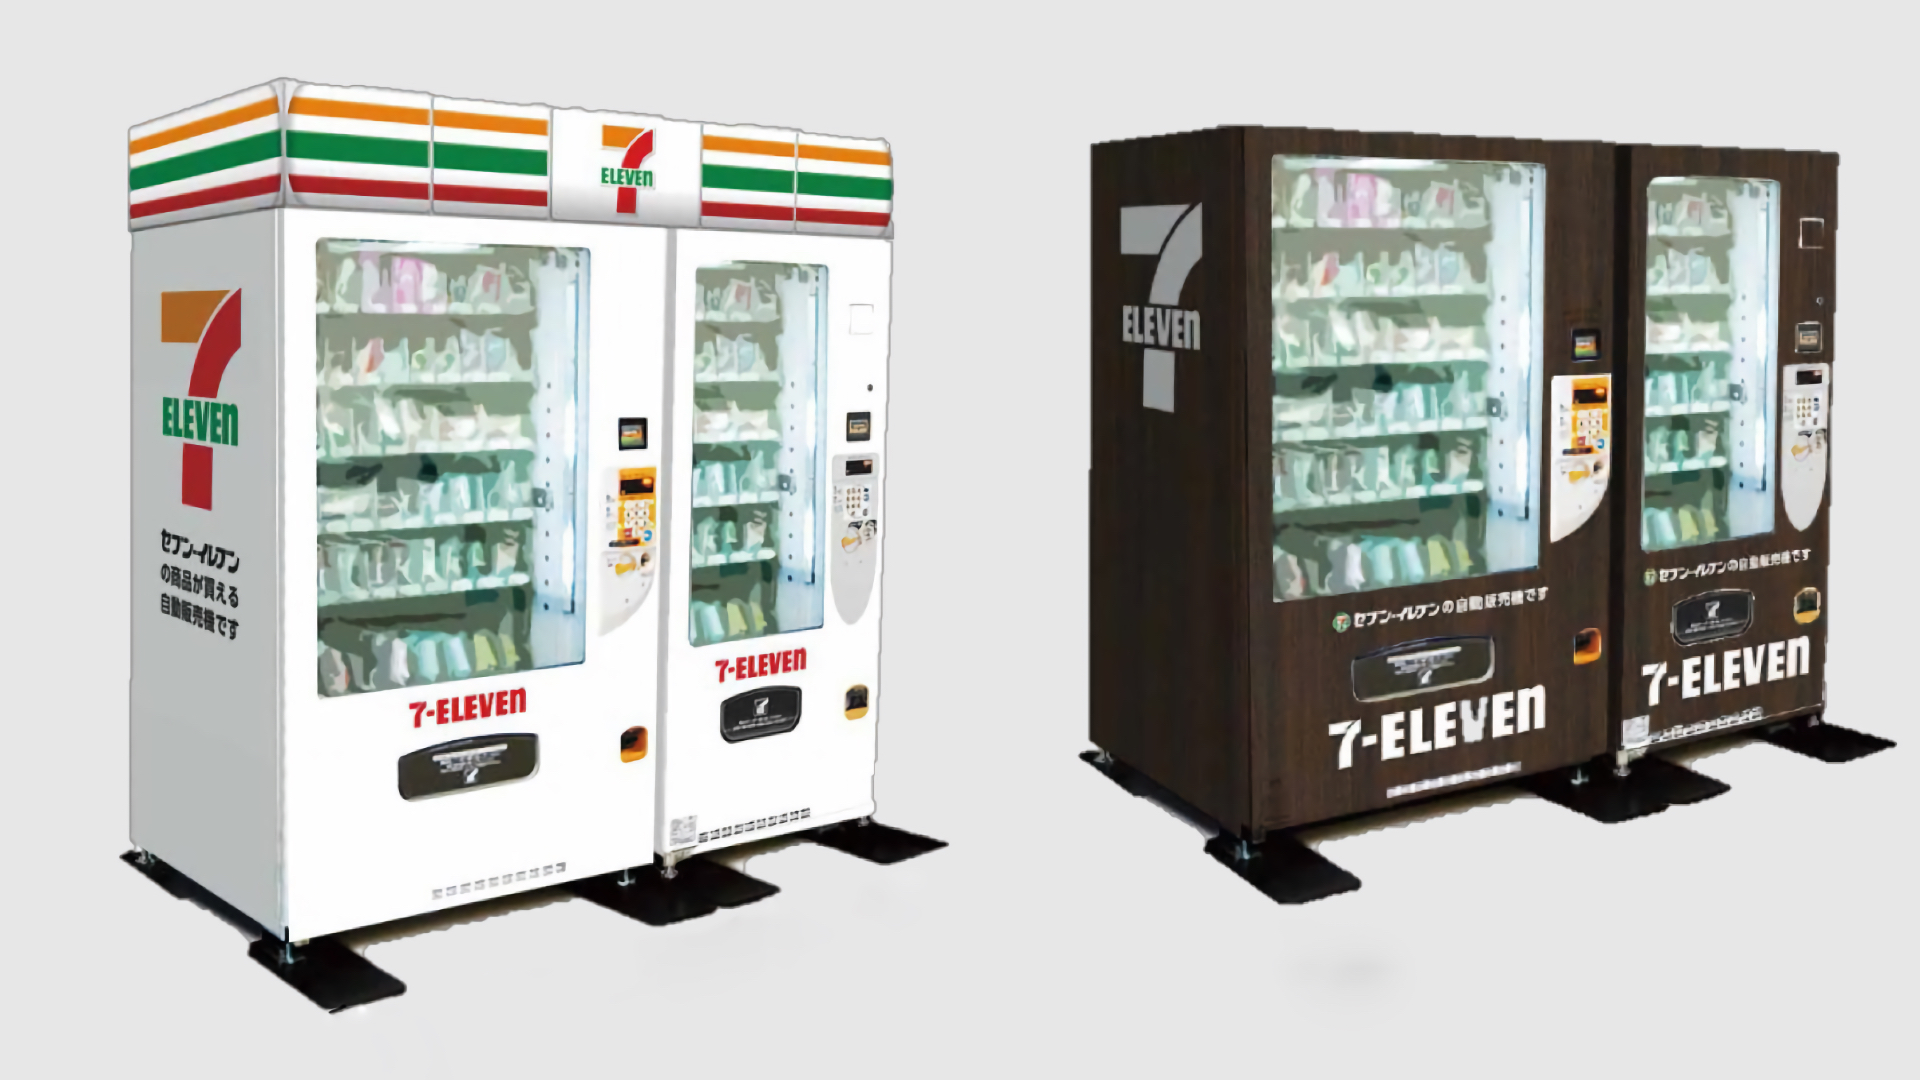 Verkaufsautomaten von Seven-Eleven in Japan.